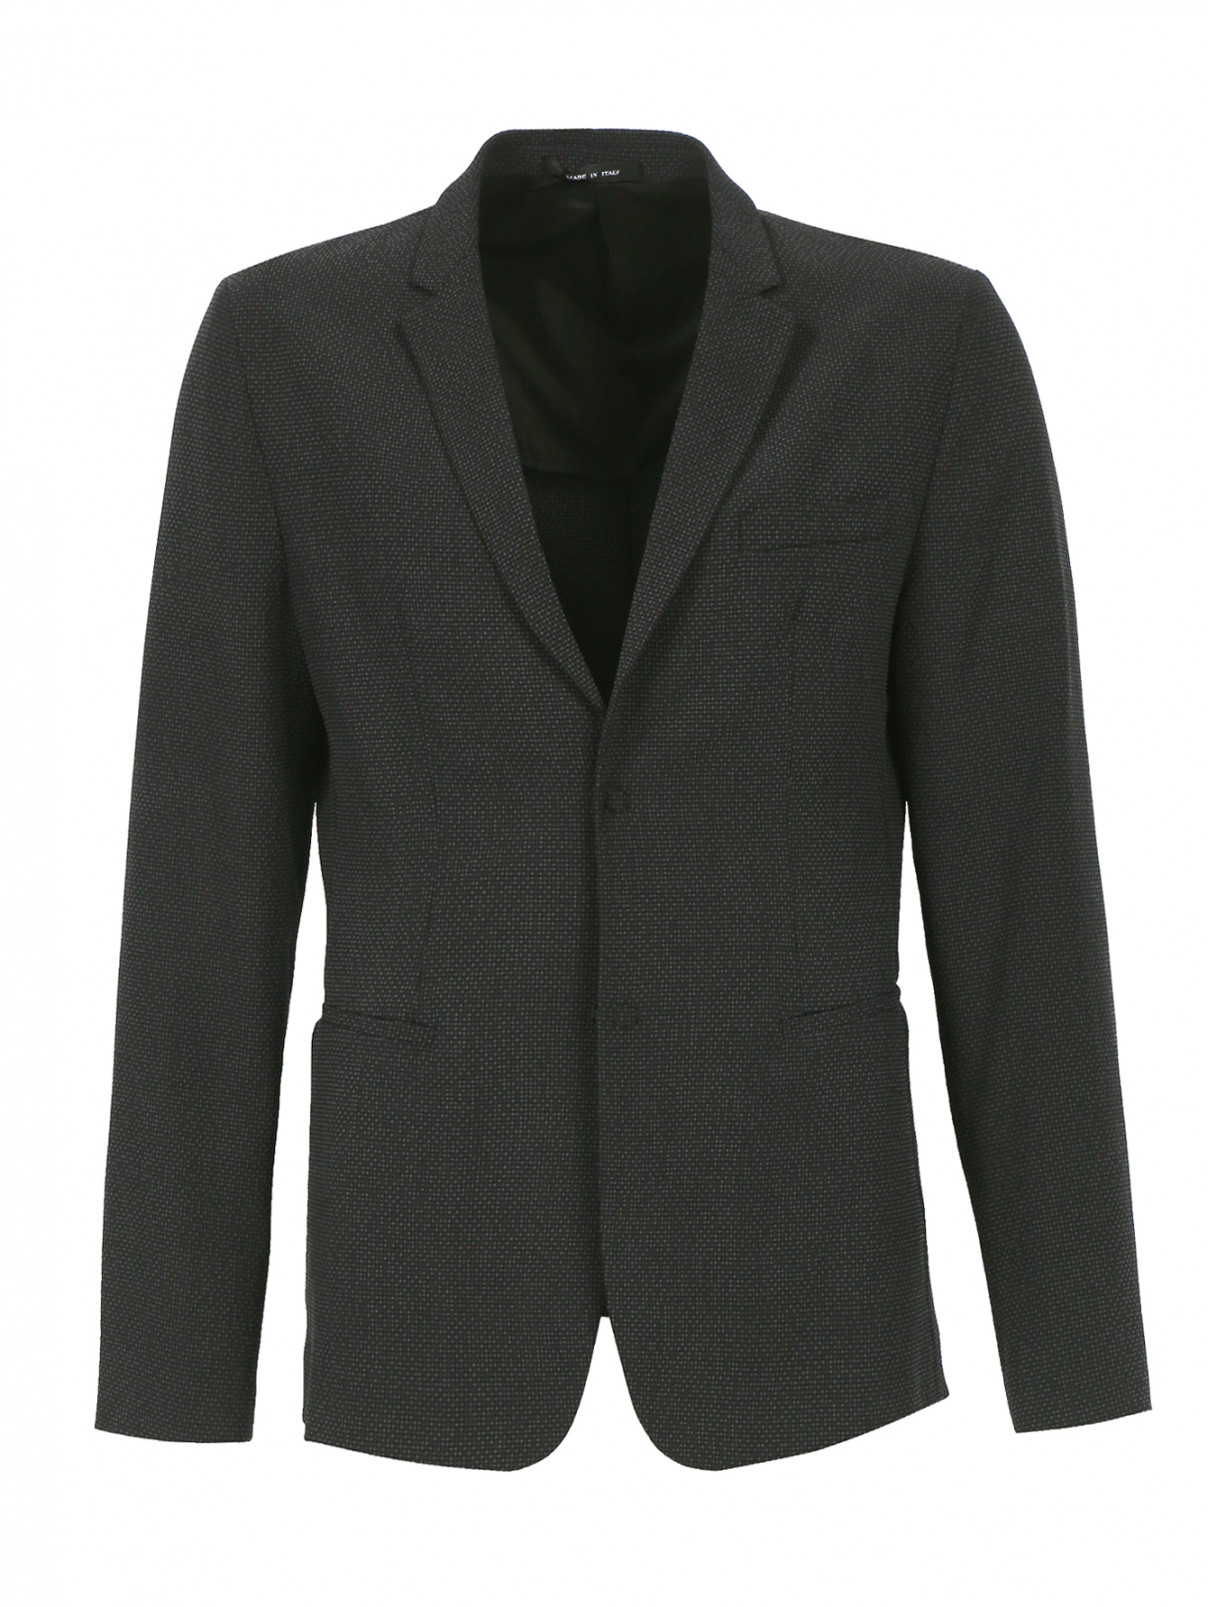 Однобортный пиджак из шерсти и шелка Emporio Armani  –  Общий вид  – Цвет:  Узор